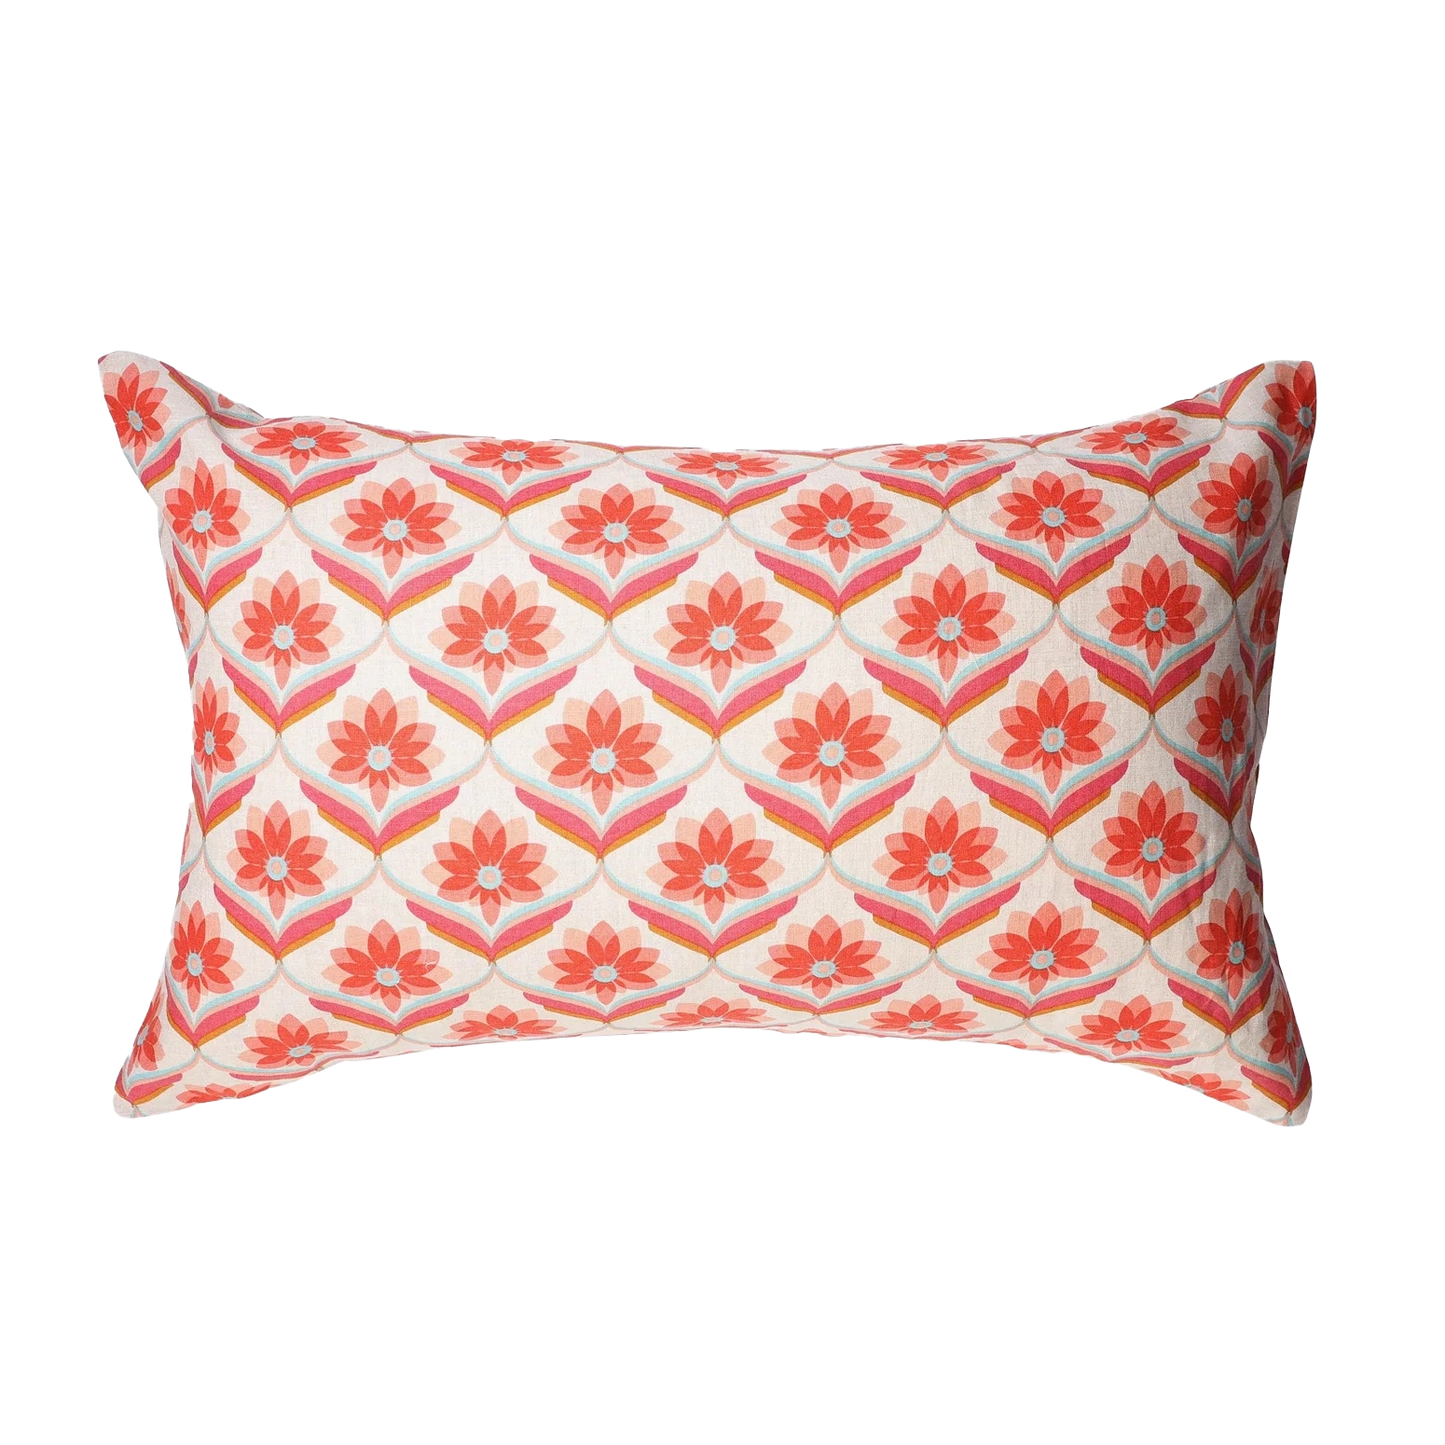 SOW Edie floral linen pillowcase set